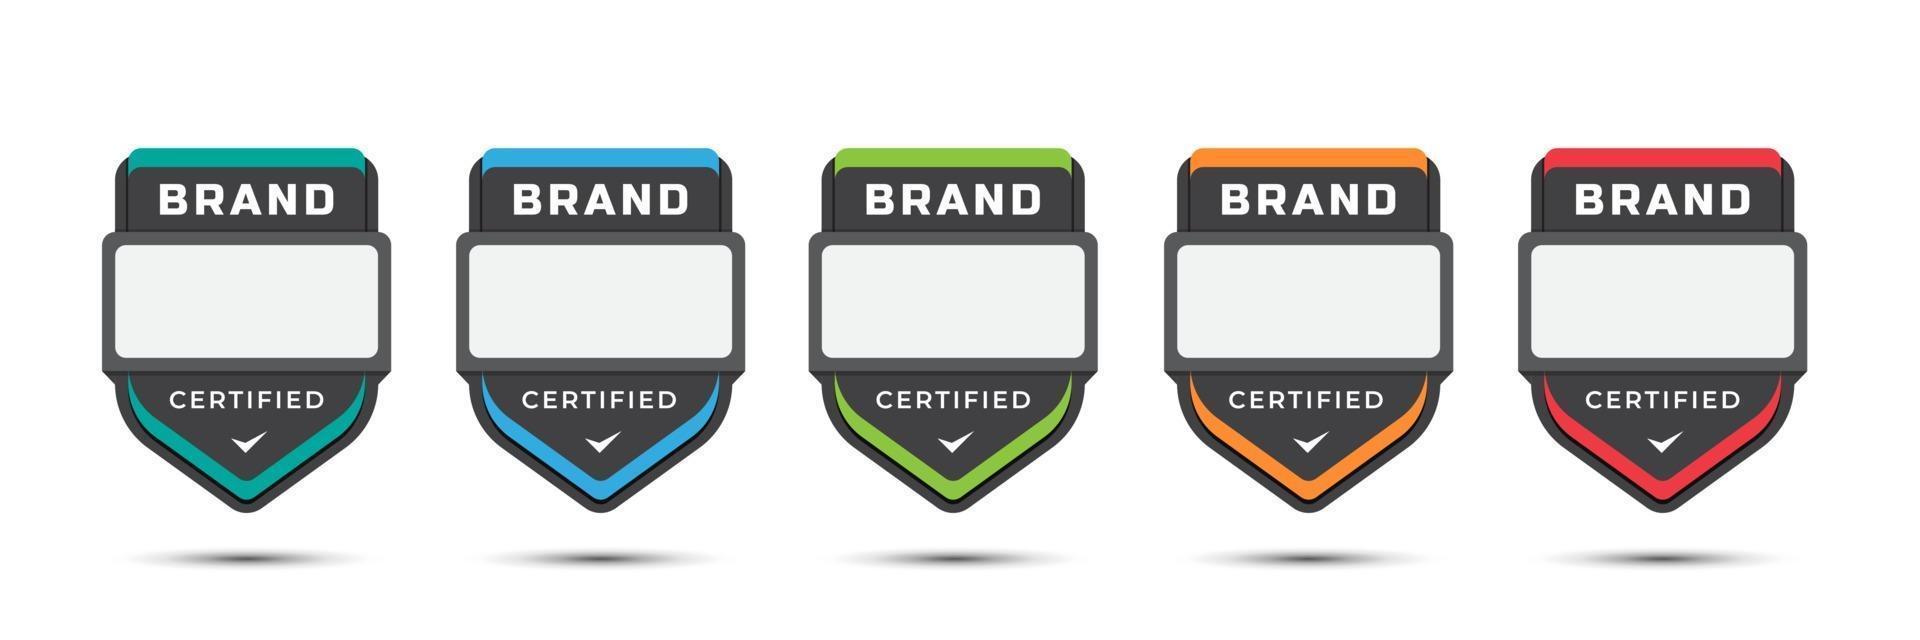 insignia de logo certificado para marca de empresa, niveles de juego, licencia corporativa, criterios de capacitación, con diseño de etiqueta de escudo. ilustración vectorial plantilla de colorido icono. vector